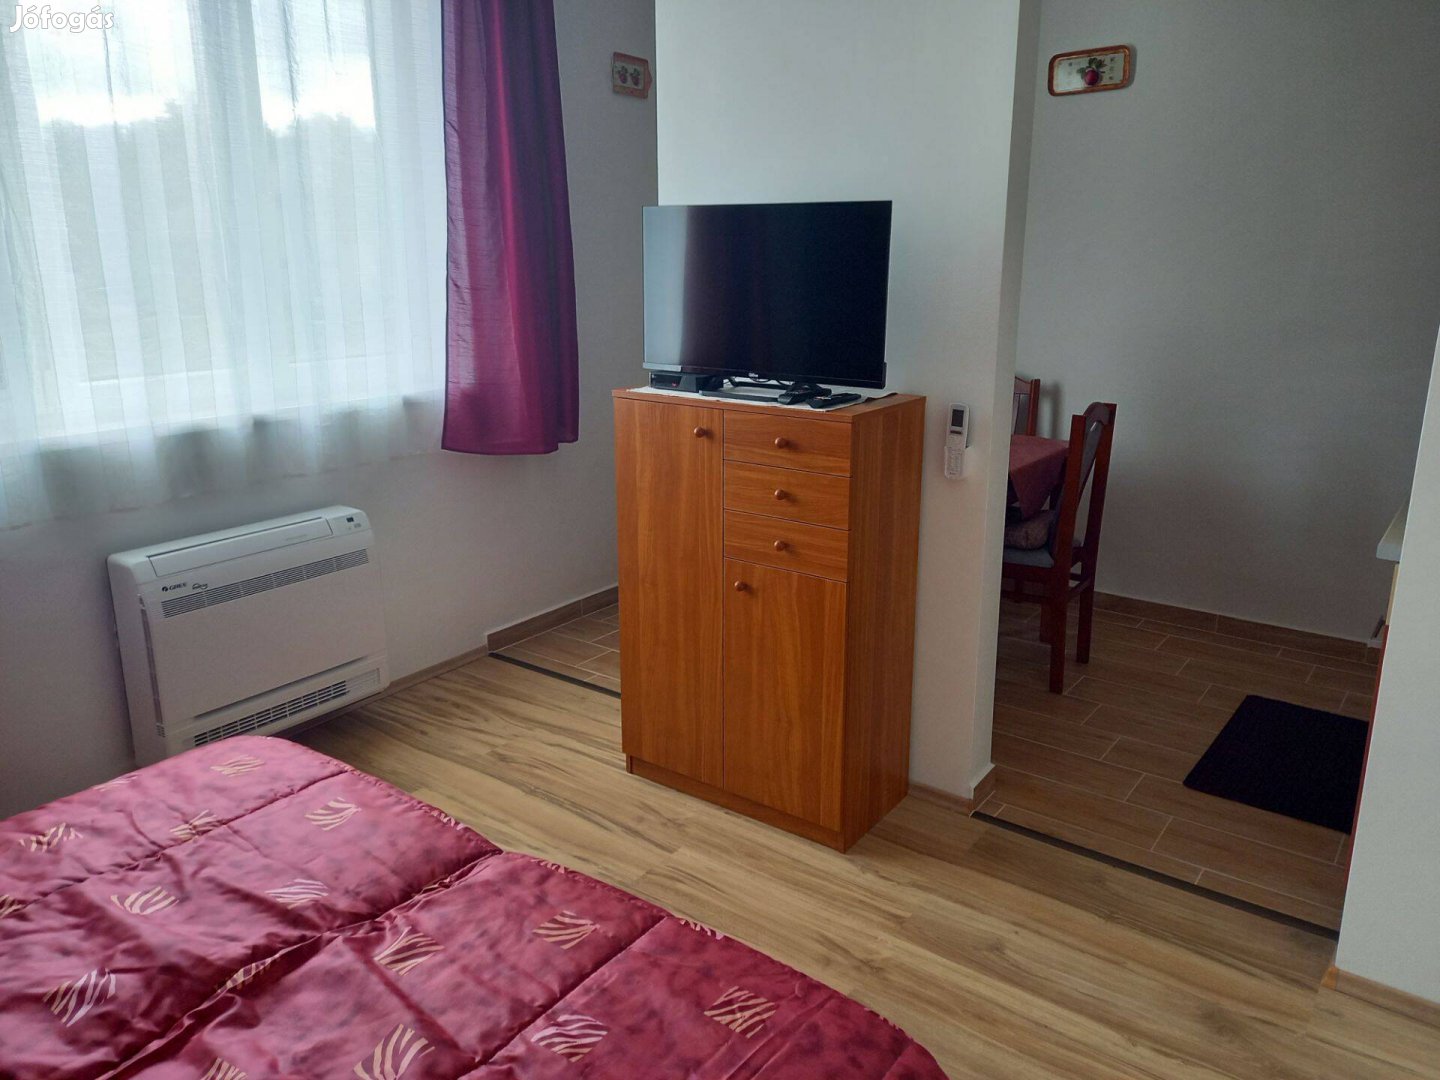 Tiszapalkonyán kiadó 5 apartman, 13 férőhely, nettó 95000 Ft/fő/hónap